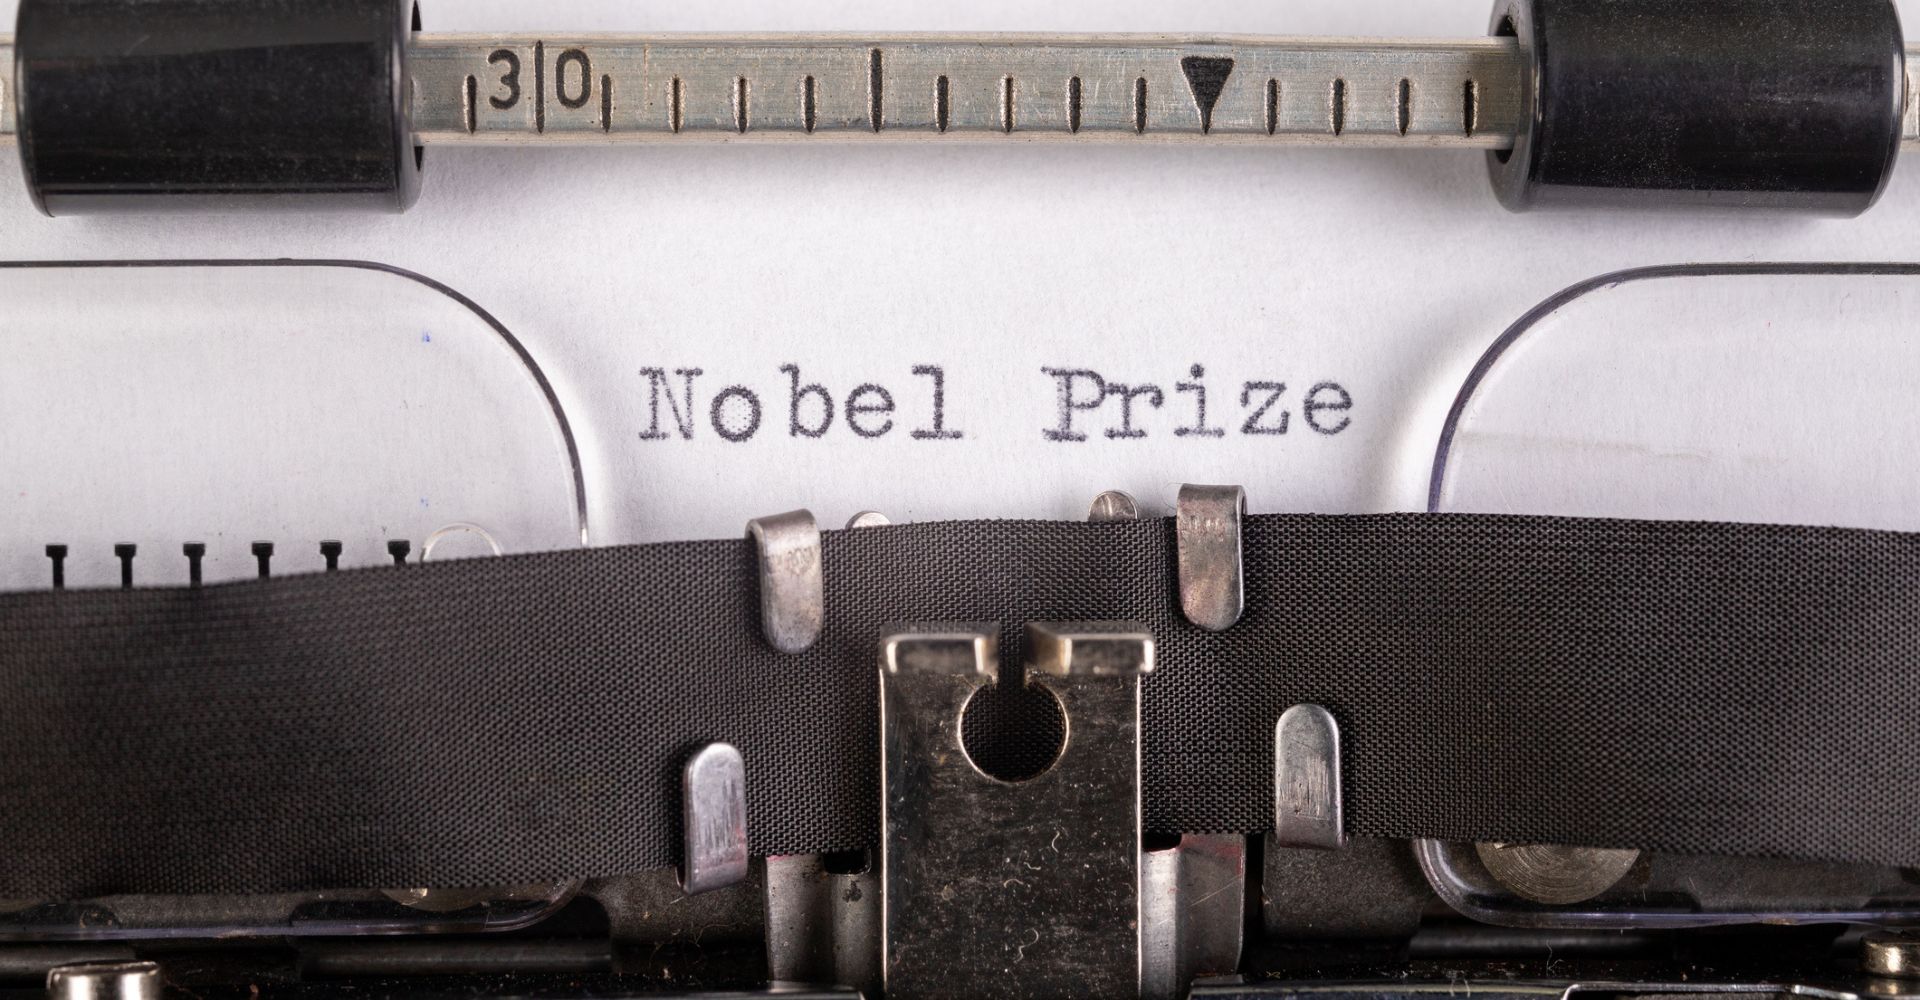 Una macchina da scrivere su cui è inserito un foglio che recita "Nobel Prize"